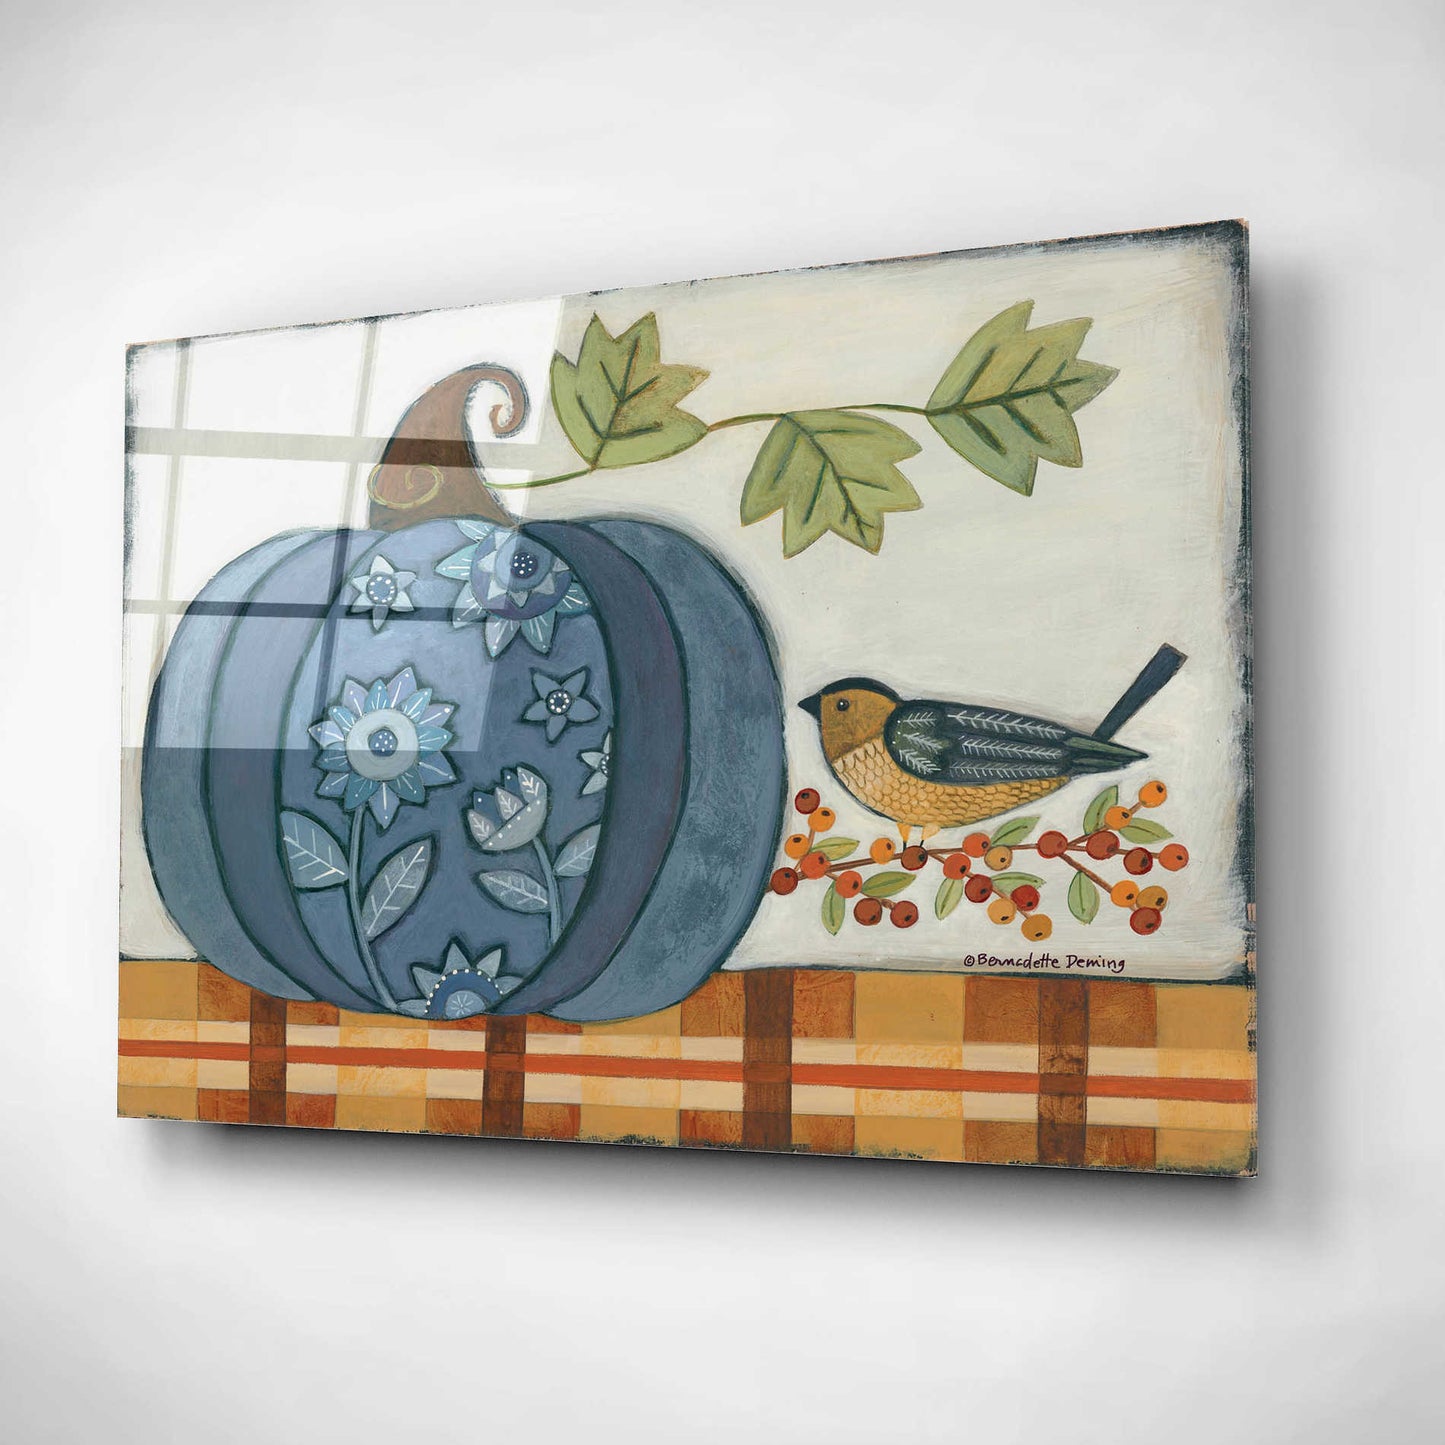 Epic Art "Blue Patterned Pumpkin" by Bernadette Deming, Acrylic Glass Wall Art,24x16